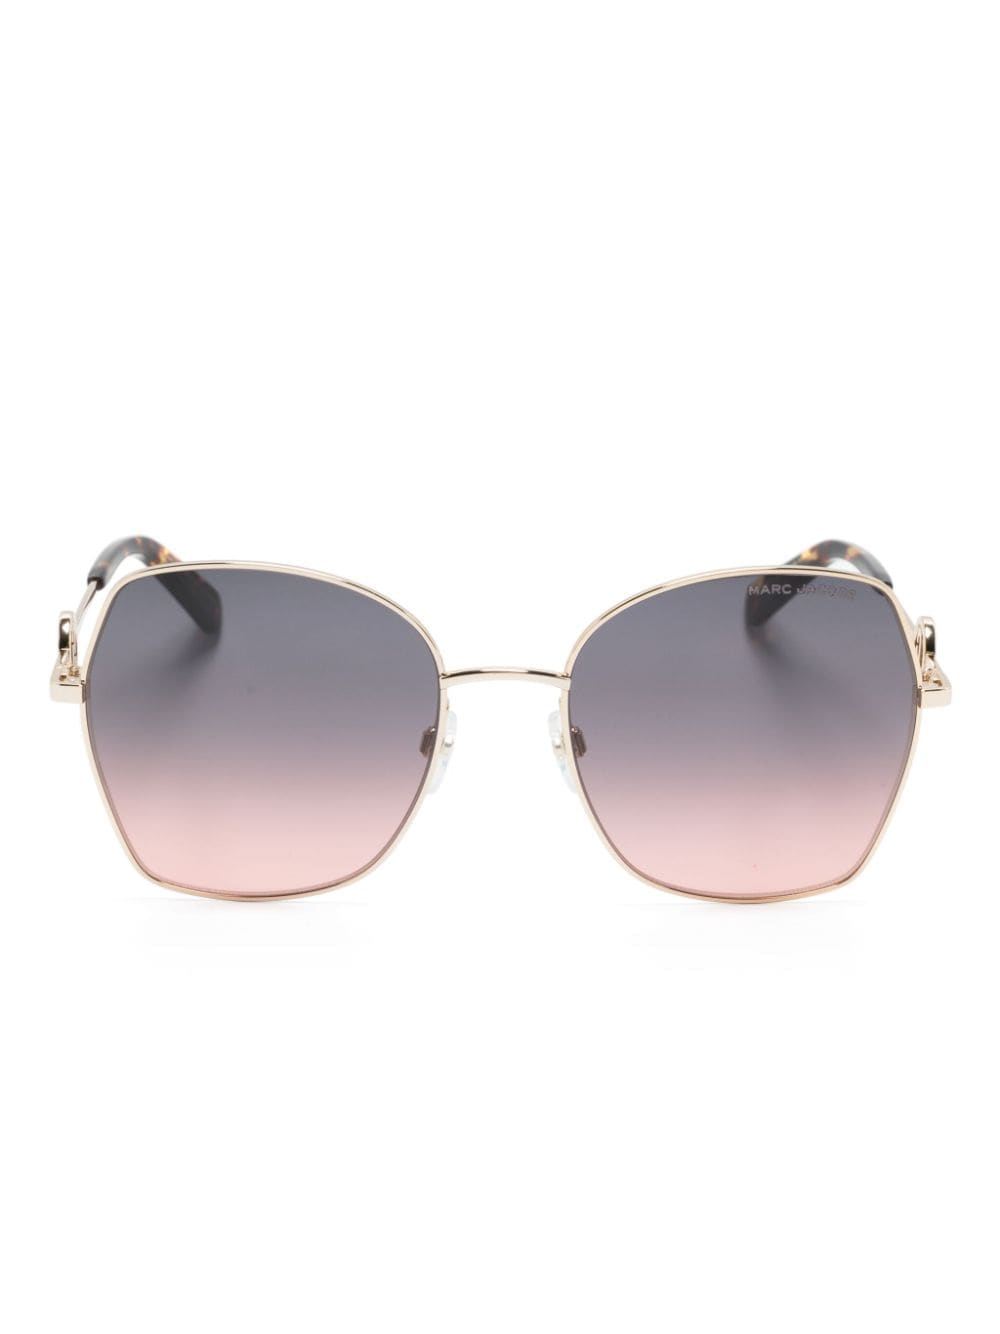 marc jacobs eyewear lunettes de soleil à monture géométrique - marron